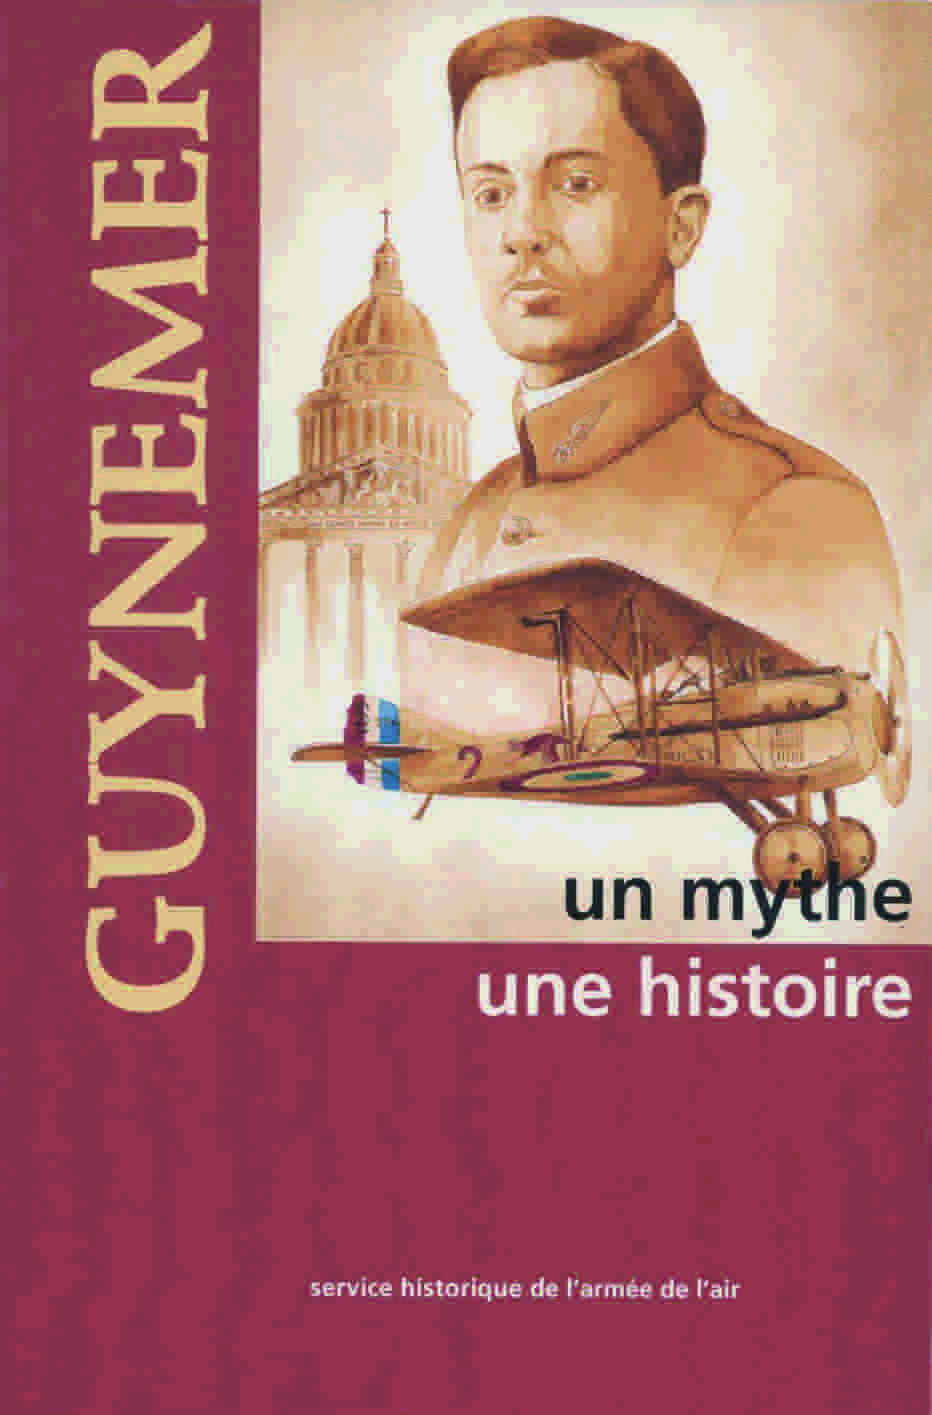 Kniha Guynemer, un mythe, une histoire SHAA